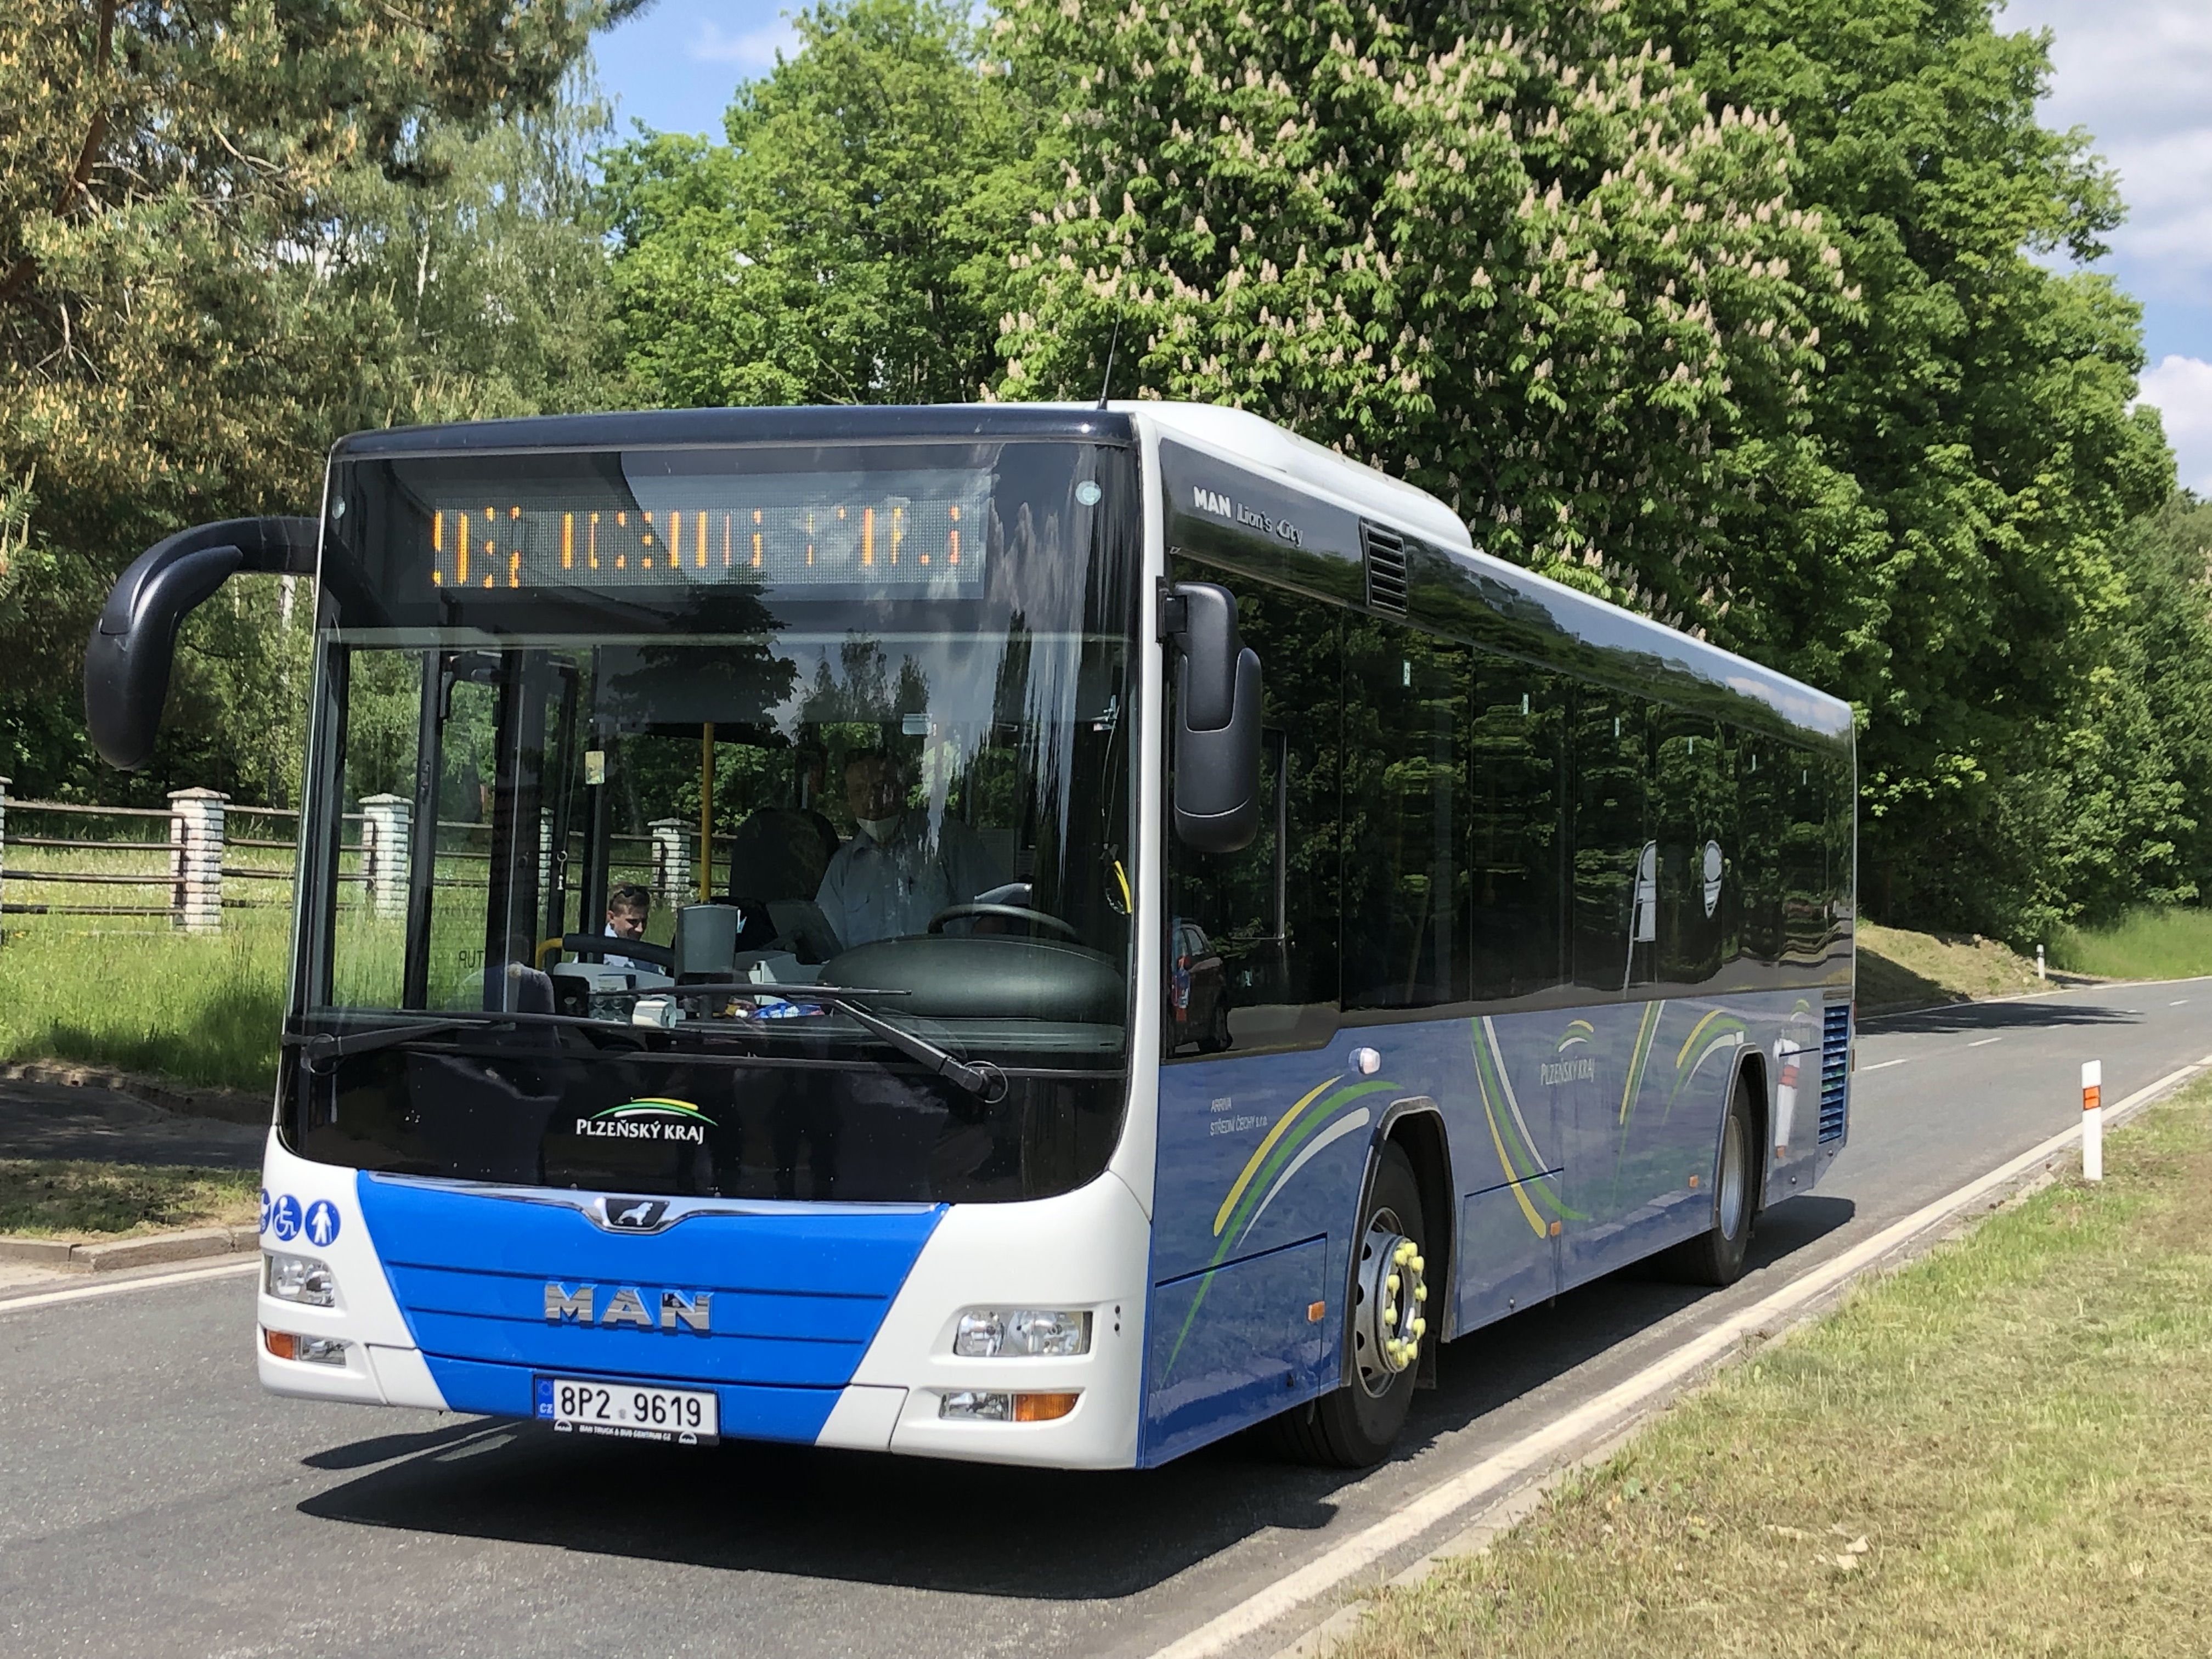 Landkreis beauftragt zusätzlichen Schülerbus zwischen Furth im Wald und Cham